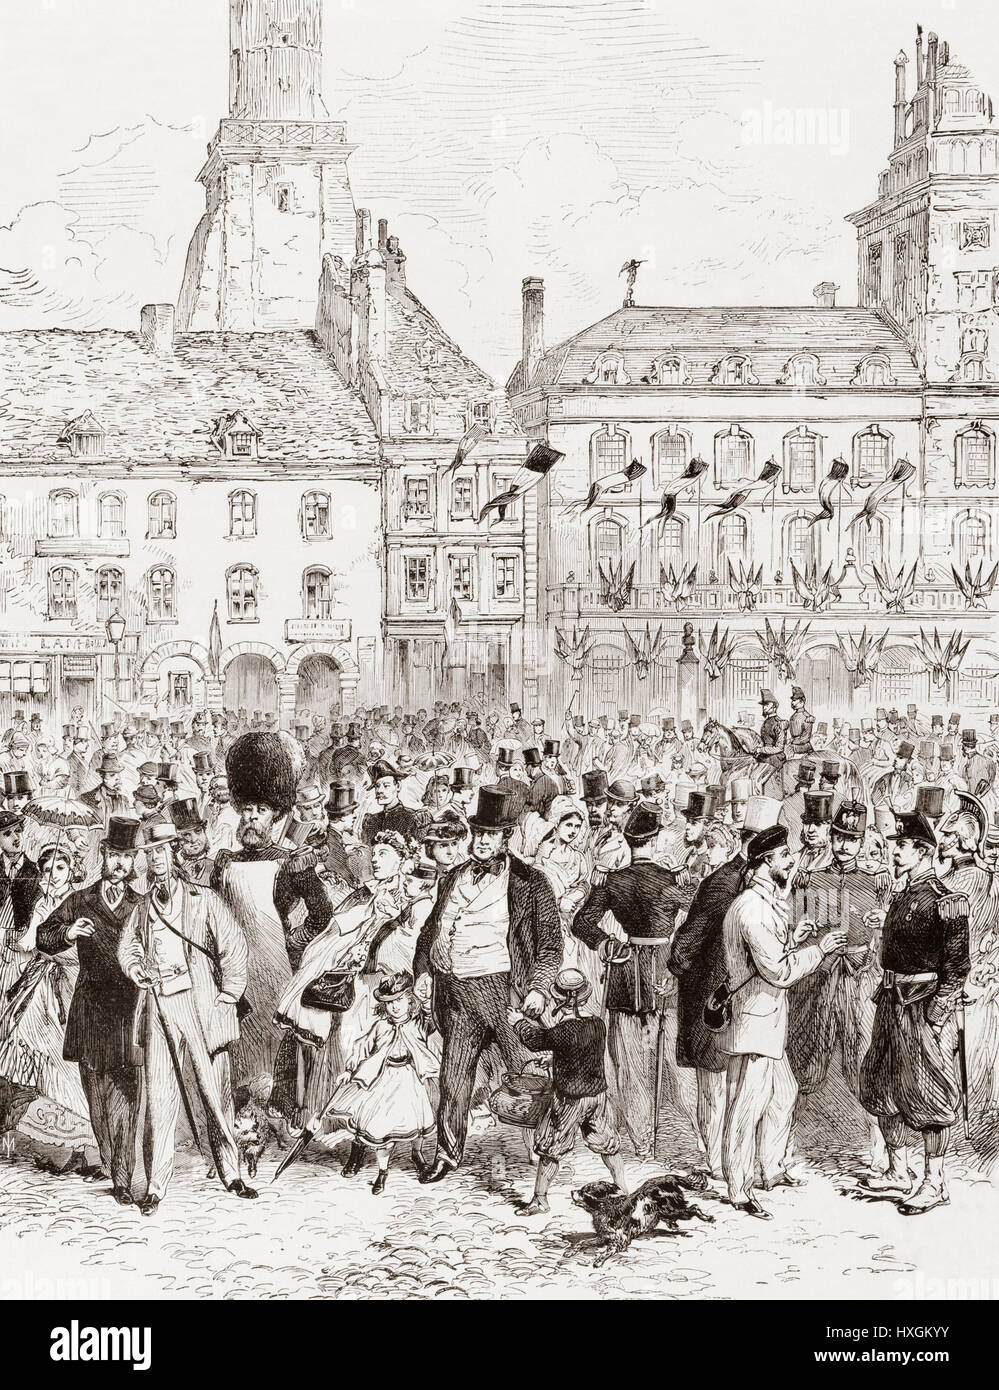 Turisti inglese lo sbarco nel porto di Calais, in Francia per l'esposizione internazionale del 1867. Da L'Univers Illustre pubblicato 1867. Foto Stock